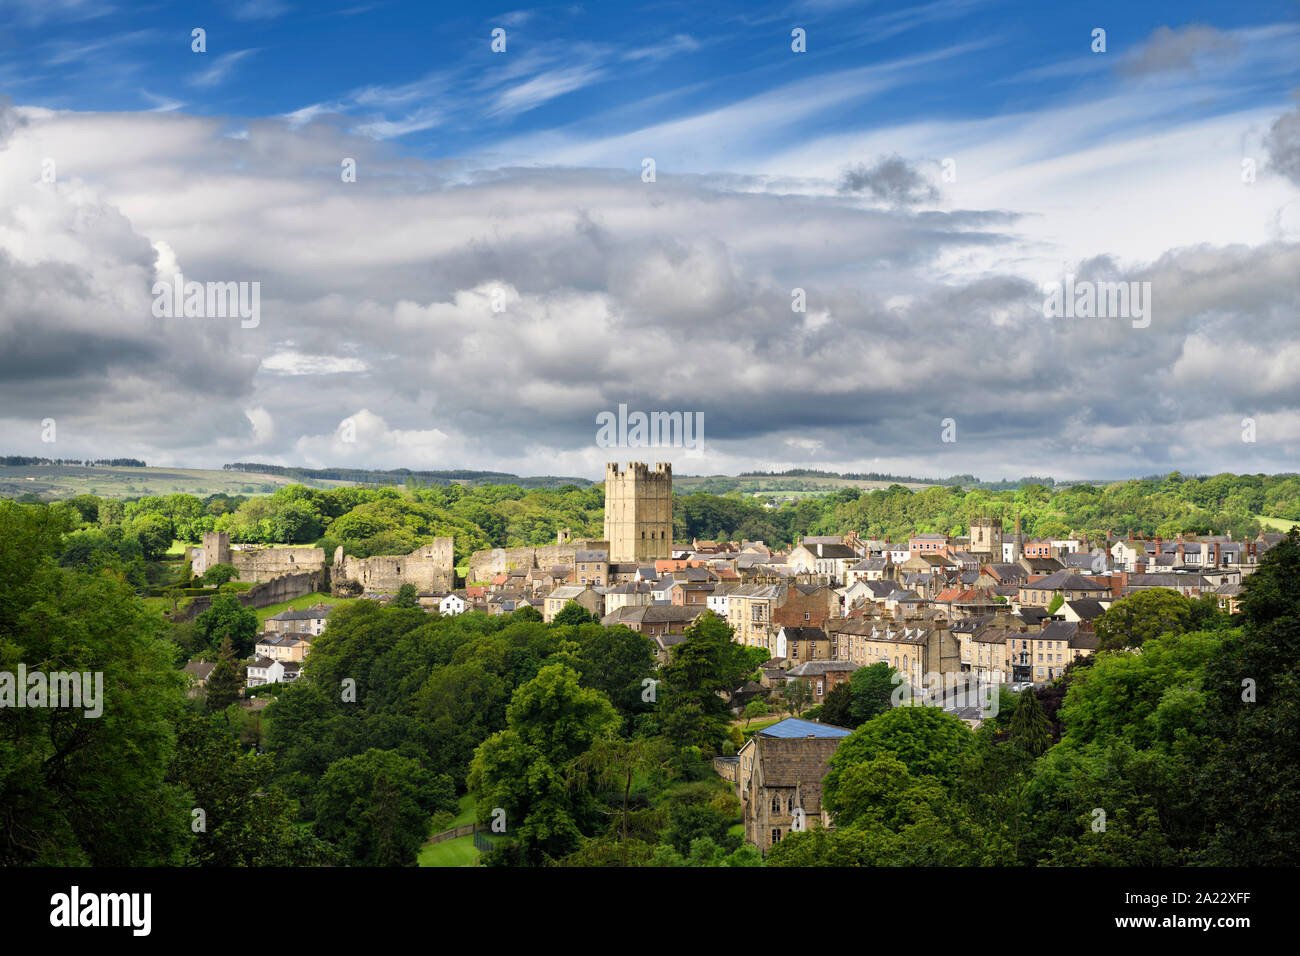 Marché de la ville historique de Richmond à North Yorkshire Angleterre avec Norman Château de Richmond au soleil avec ciel nuageux Banque D'Images